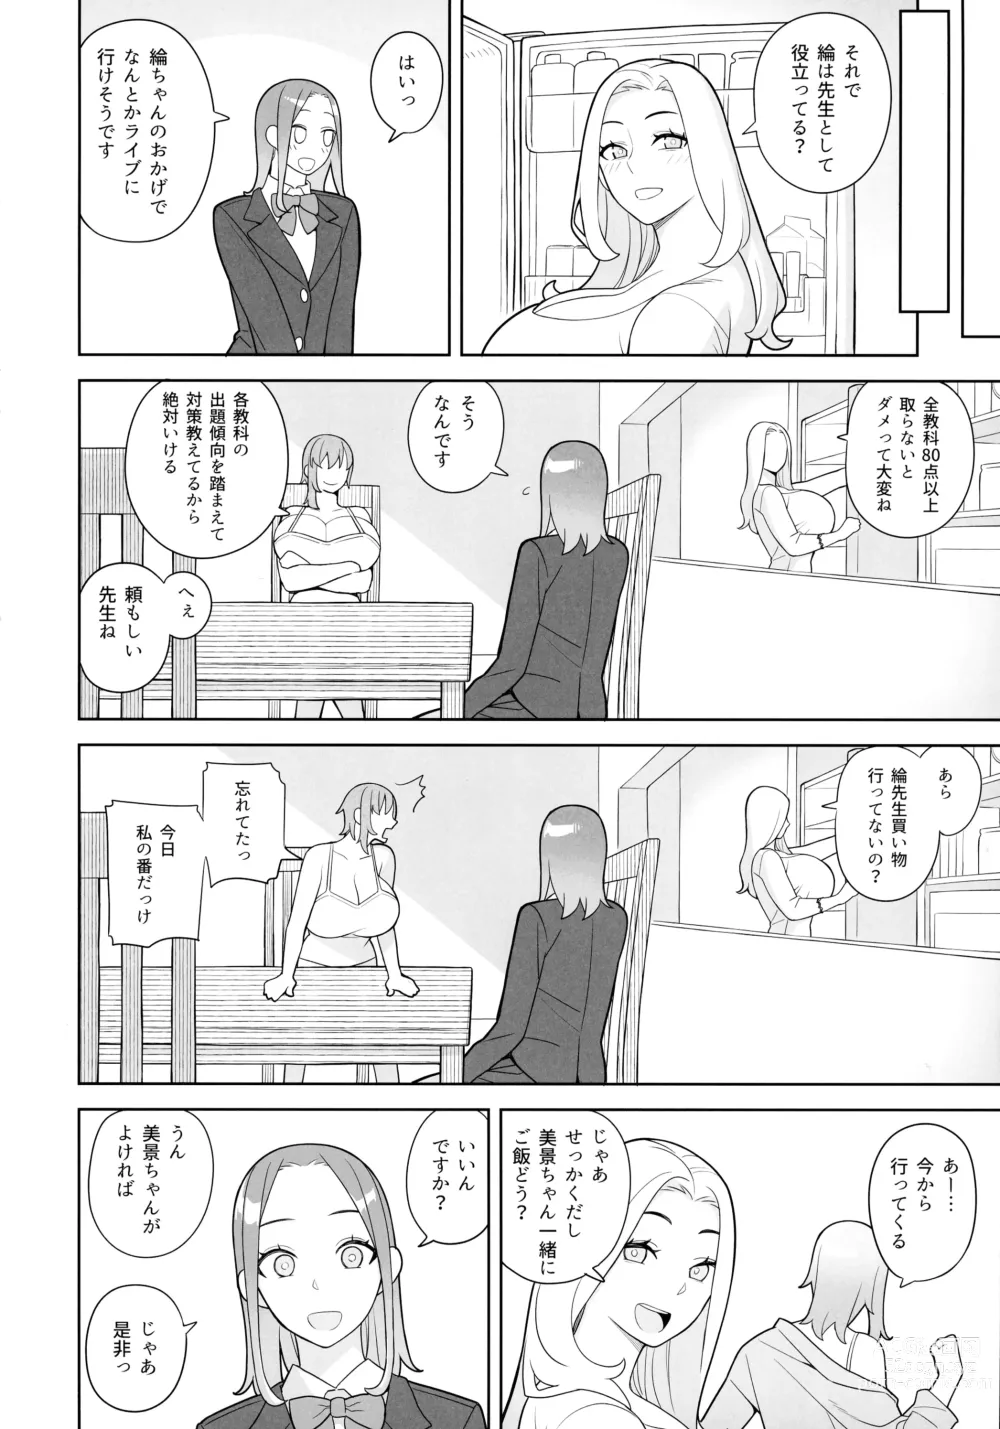 Page 6 of doujinshi Tomodachi to Sono Haha Oya ni Semarareru Hanashi